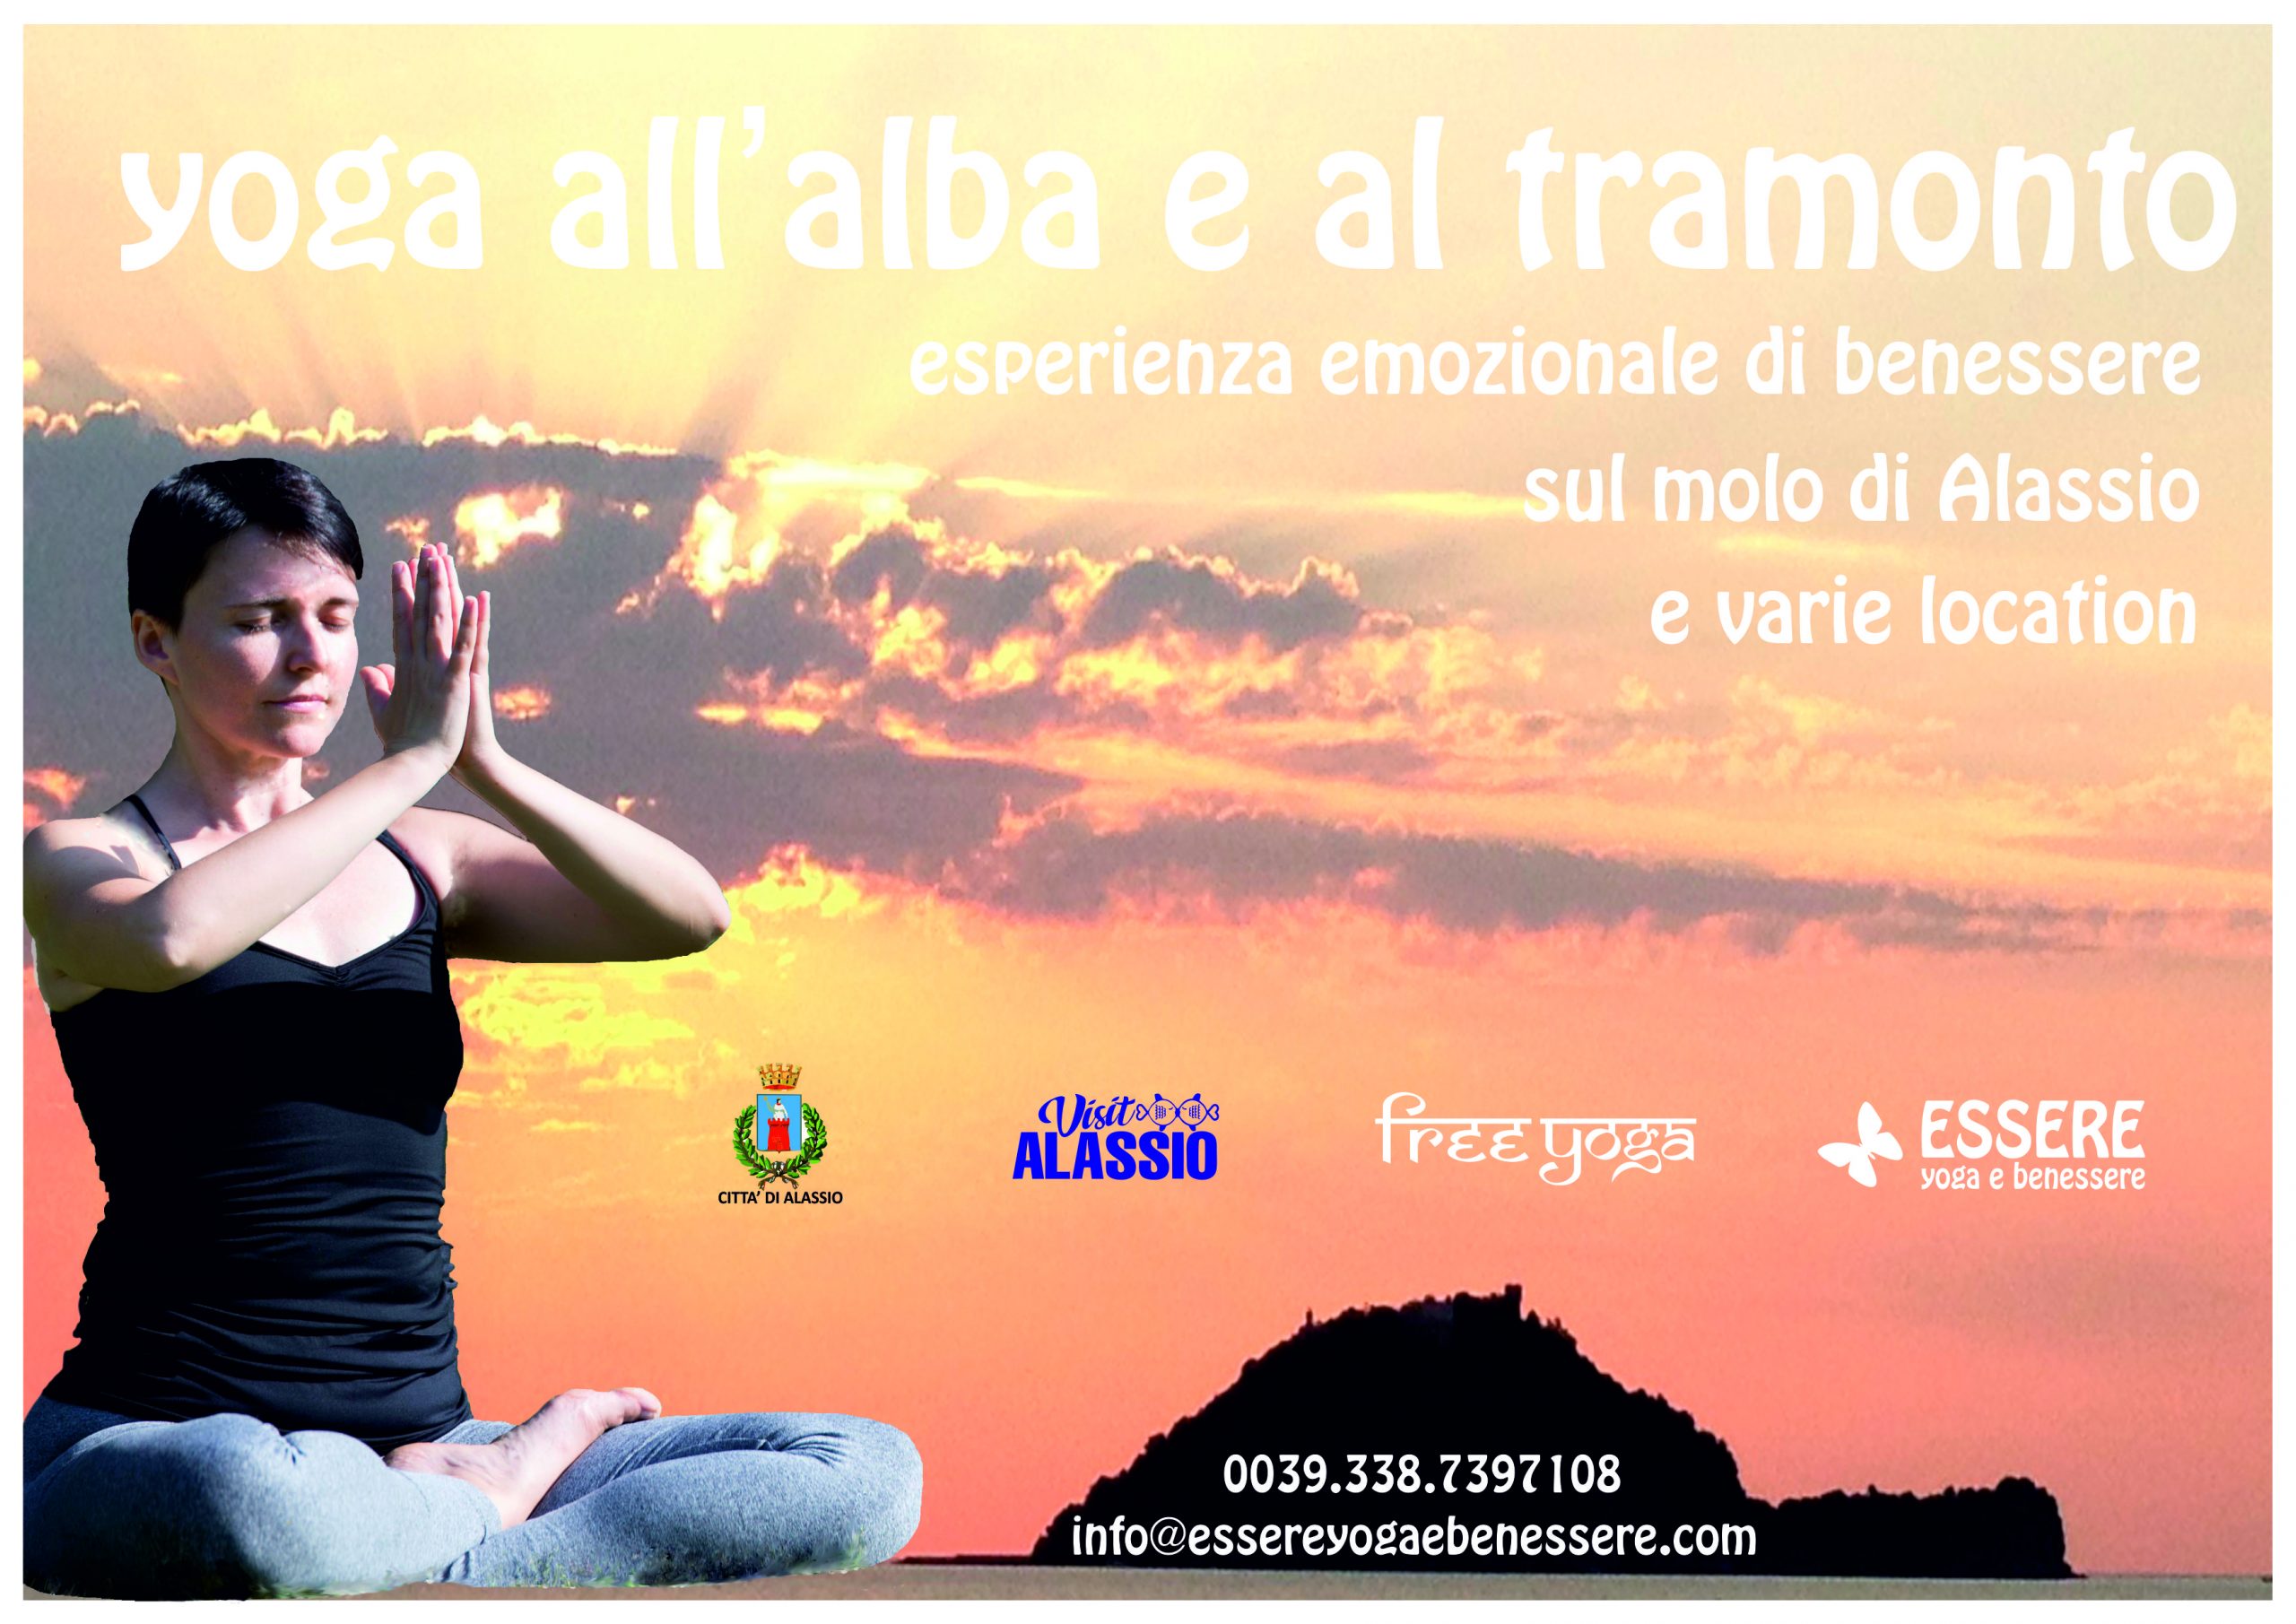 alba-tramonto-essere-free-yoga-molo-experience-esperienza-premium-gratuito-benessere-village-citta-visit-alassio-lucia-ragazzi-wellbeing-wellness